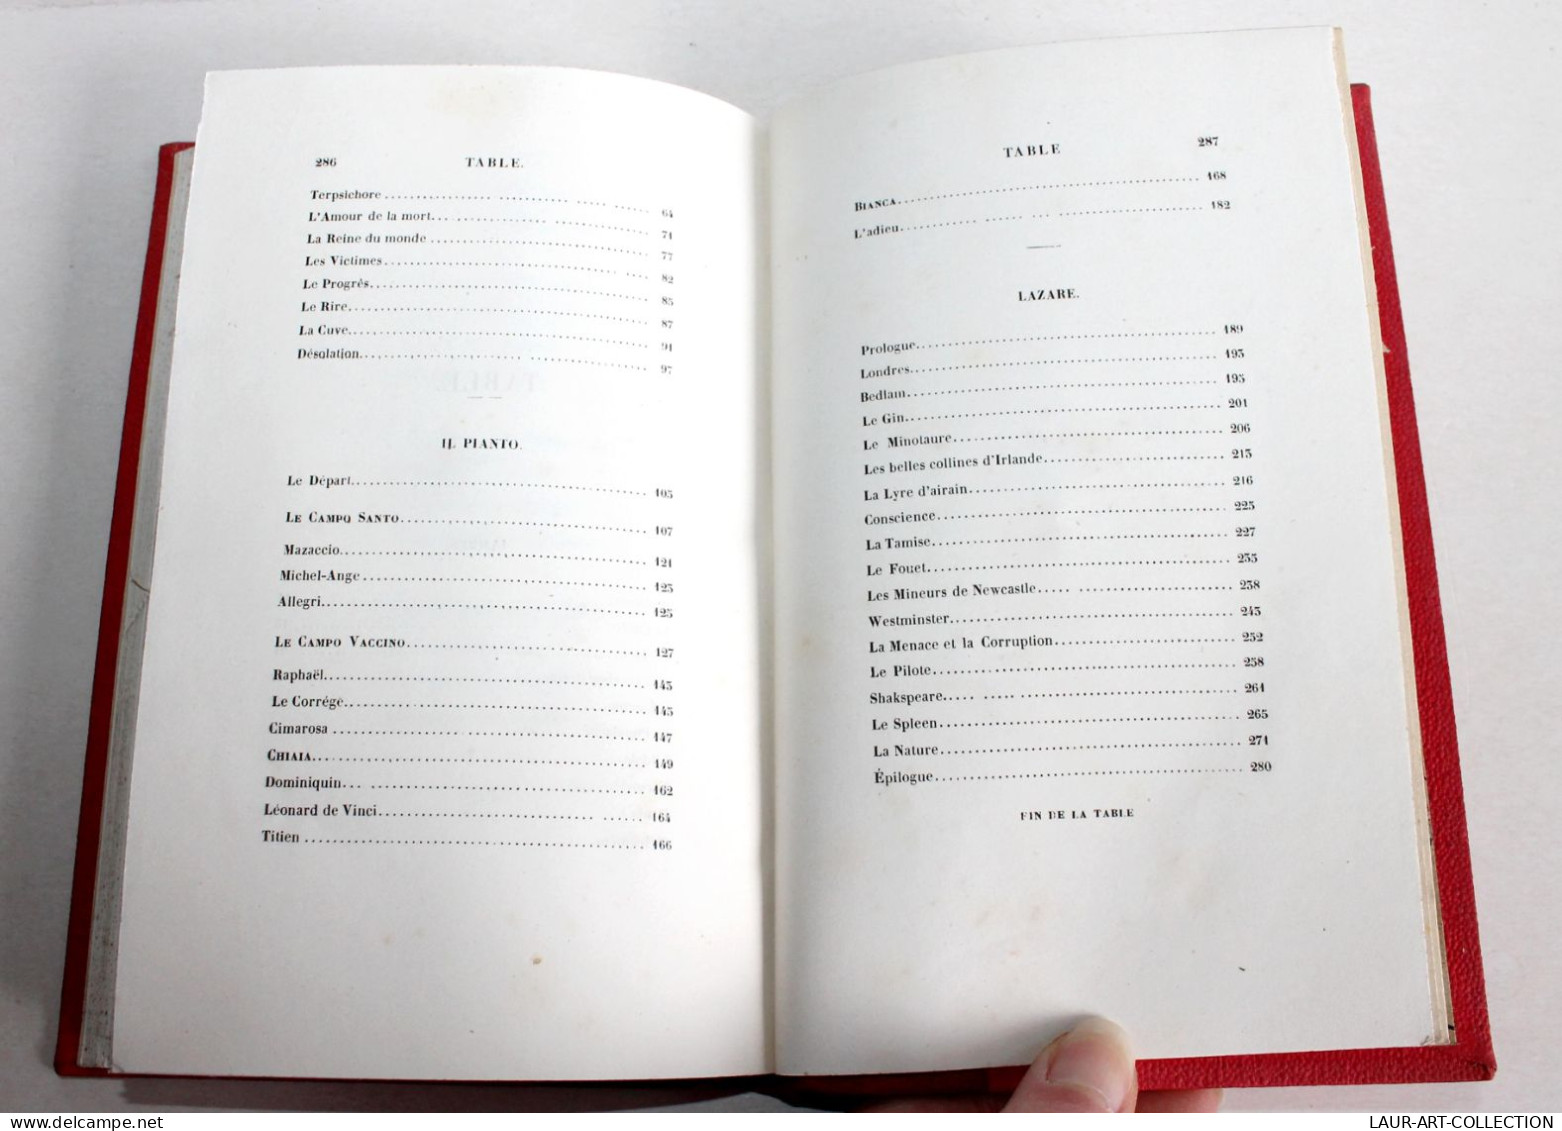 LAMBES ET POEMES Par AUGUSTE BARBIER, 4e EDITION 1841 MASGANA, POESIE / ANCIEN LIVRE XIXe SIECLE (1803.50) - French Authors